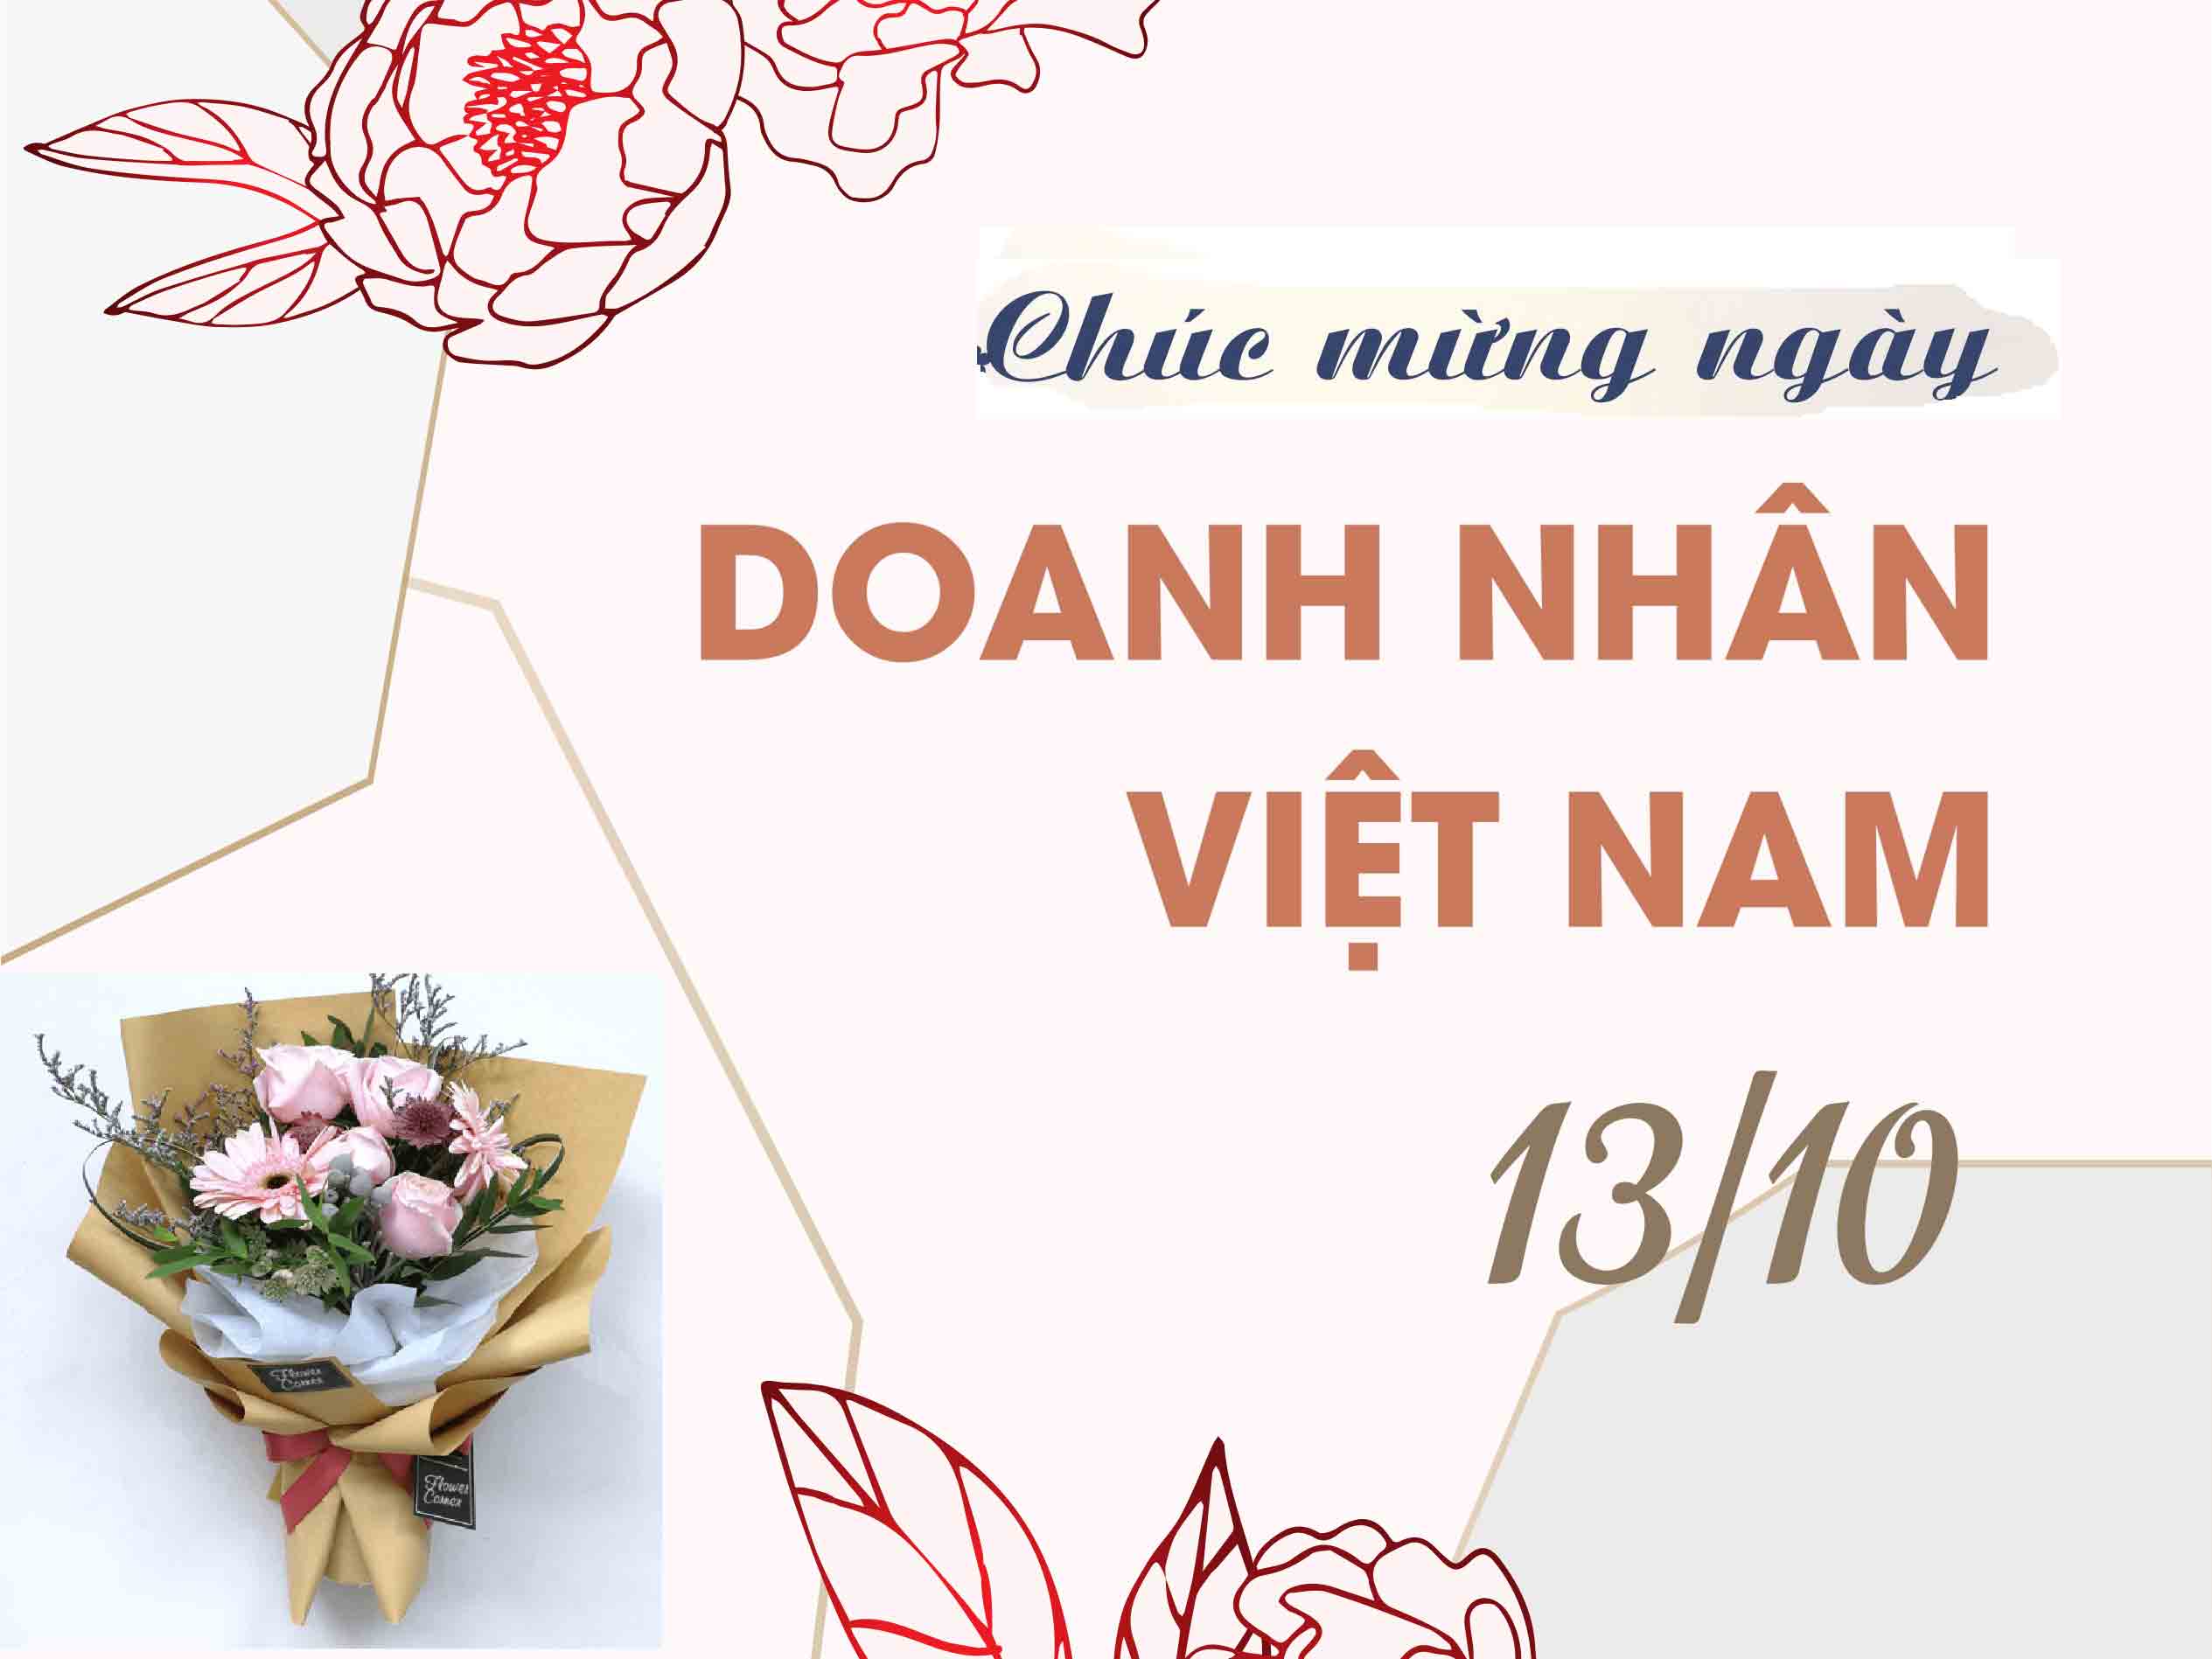 Lời chúc mừng: Những lời chúc mừng ngày càng trở thành một phần không thể thiếu trong những dịp quan trọng. Nhân ngày Doanh nhân Việt Nam, chúc mừng tất cả những người đã và đang góp phần thúc đẩy sự phát triển kinh tế và xã hội của đất nước. Hãy thưởng thức hình ảnh liên quan để cùng đón chào những bước tiến mới của doanh nhân Việt Nam.